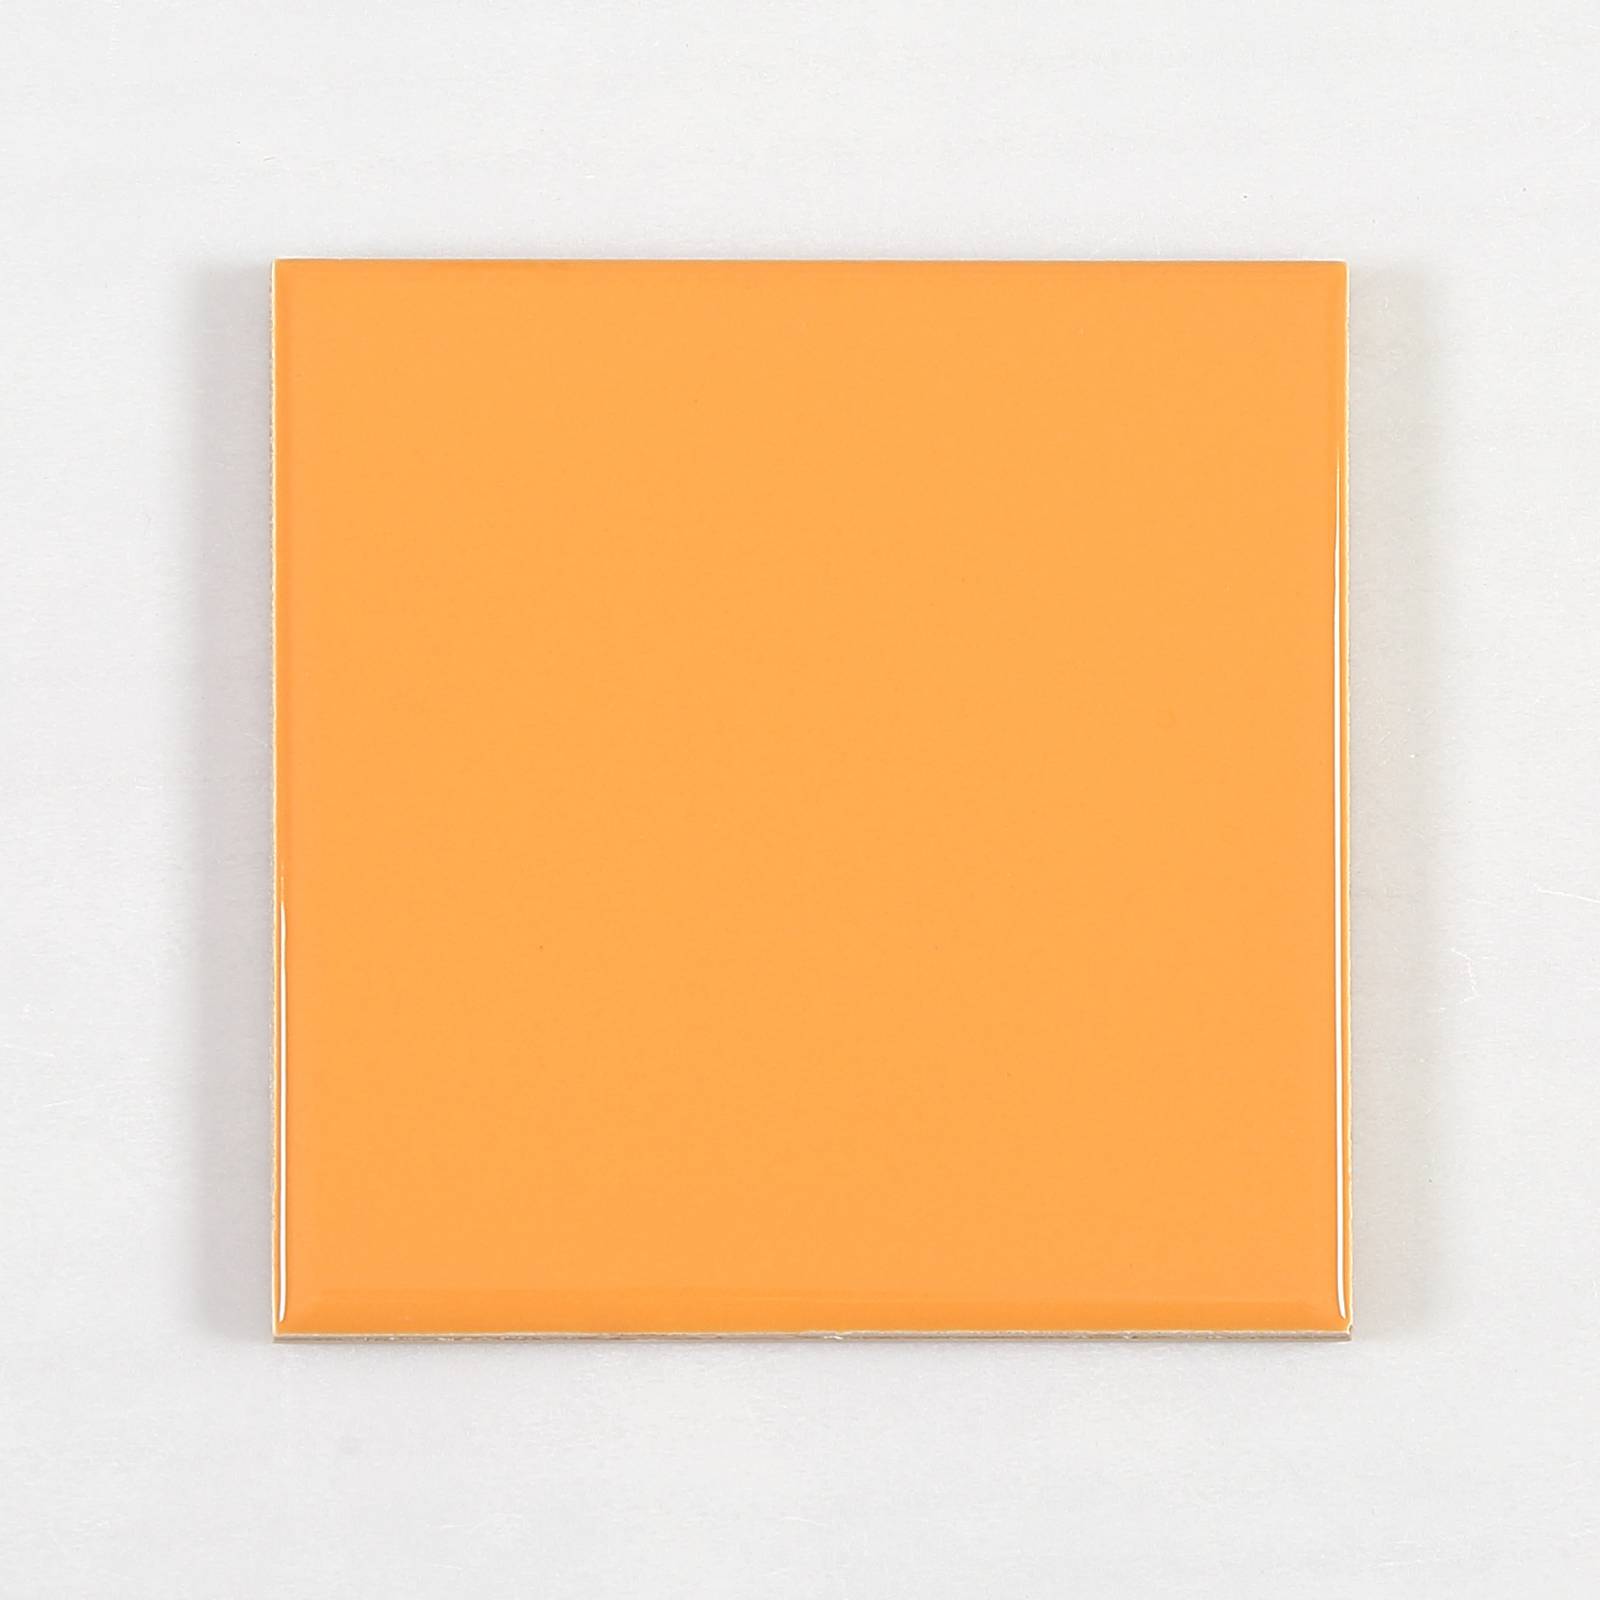 Gạch thẻ trang trí màu cam nhạt bóng phẳng KT 100x100mm V1109B